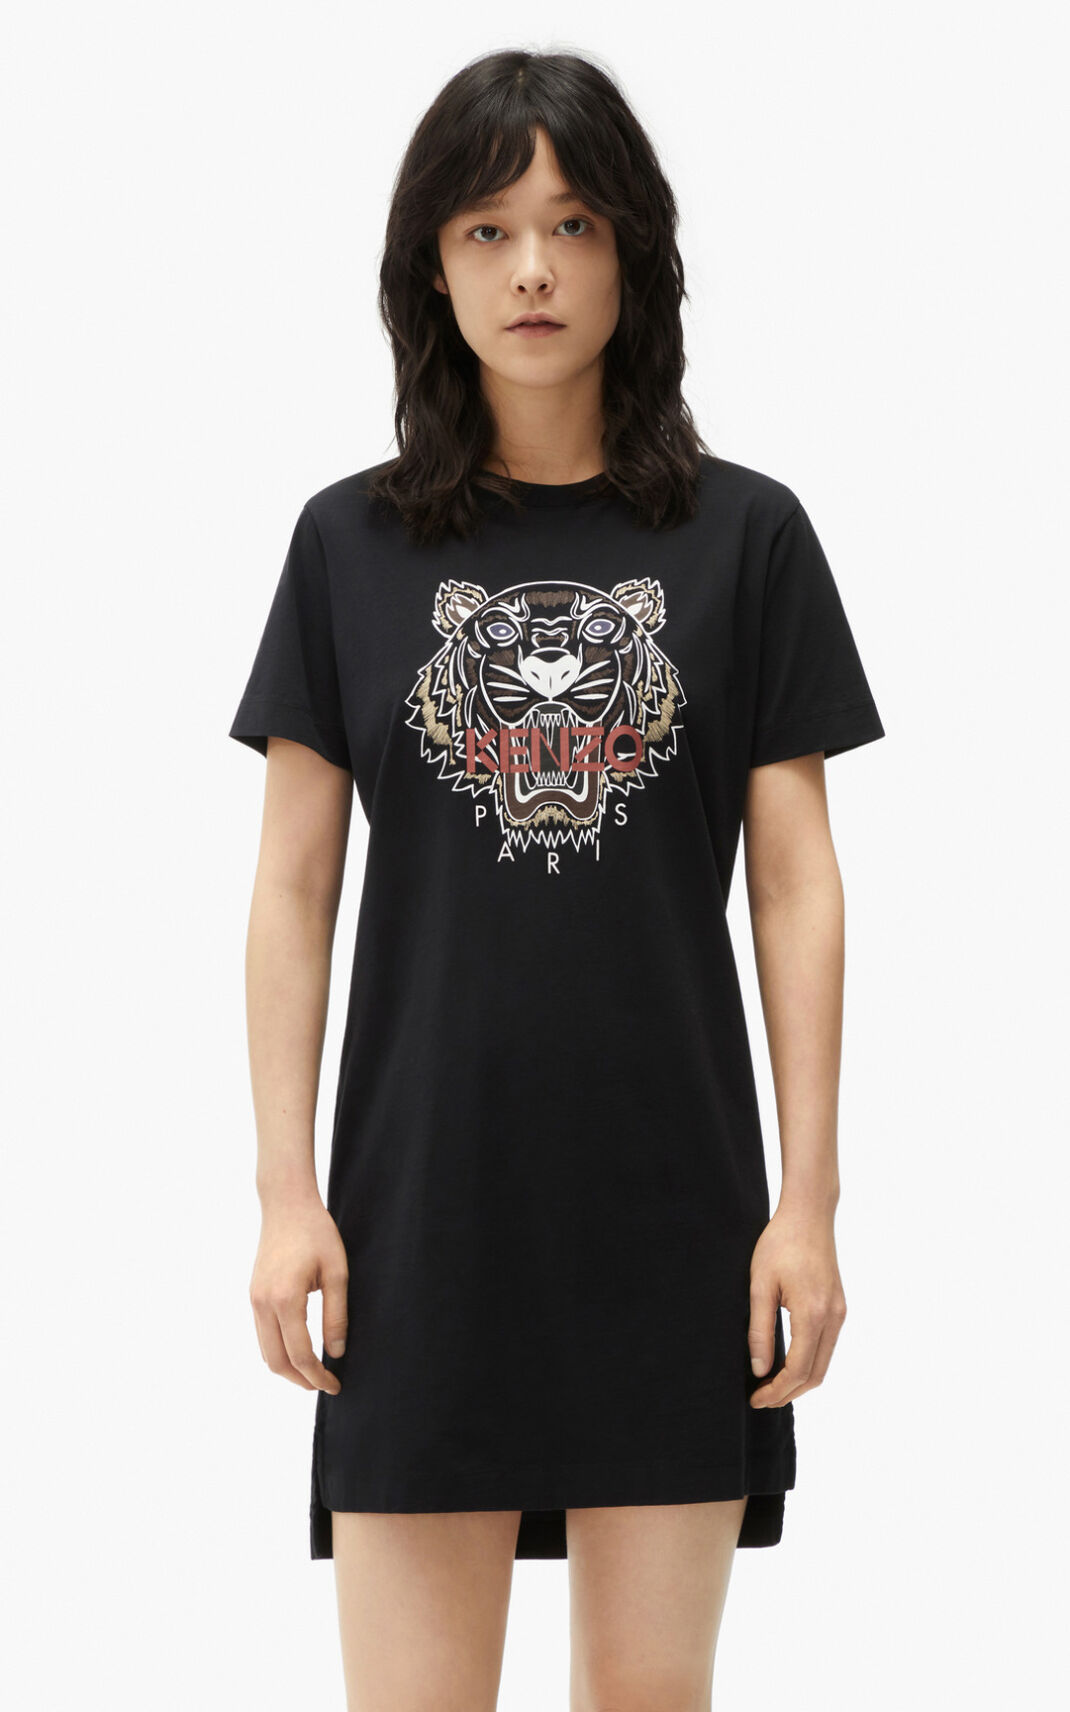 Vestido Kenzo Tiger T shirt Feminino - Pretas | 930JMRWZD